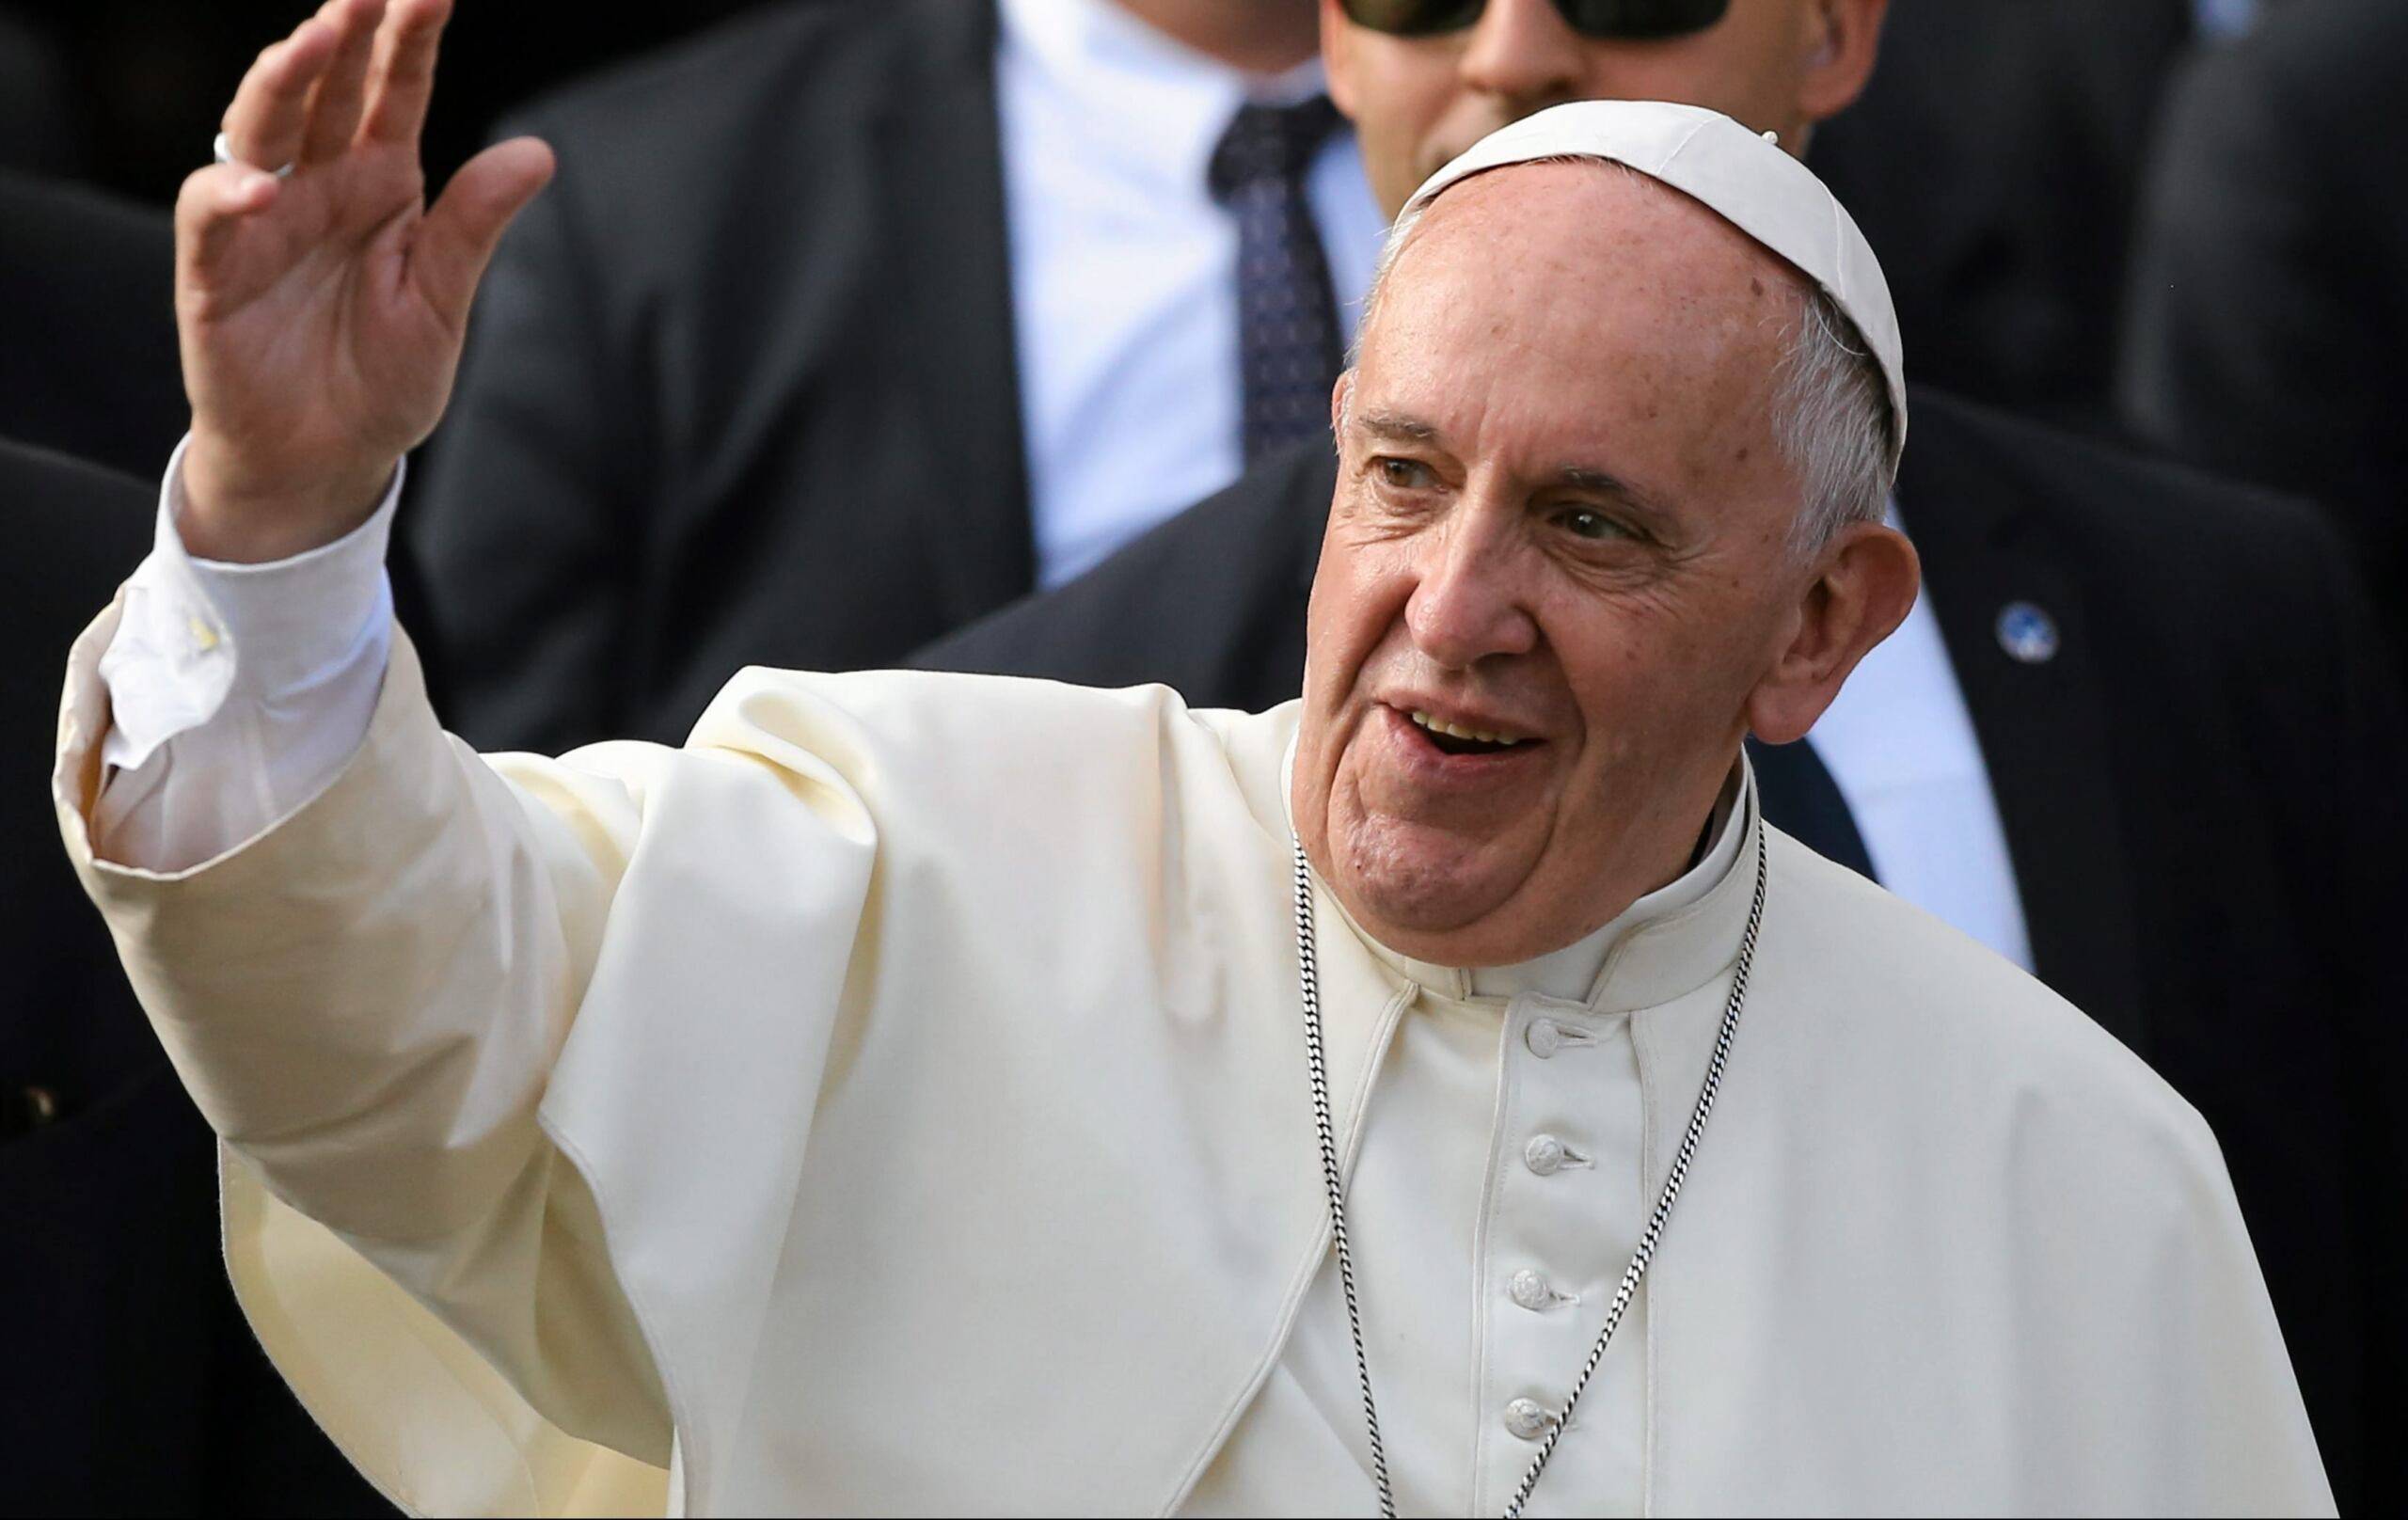 papież Franciszek z uniesioną ręką pozdrawia wiernych